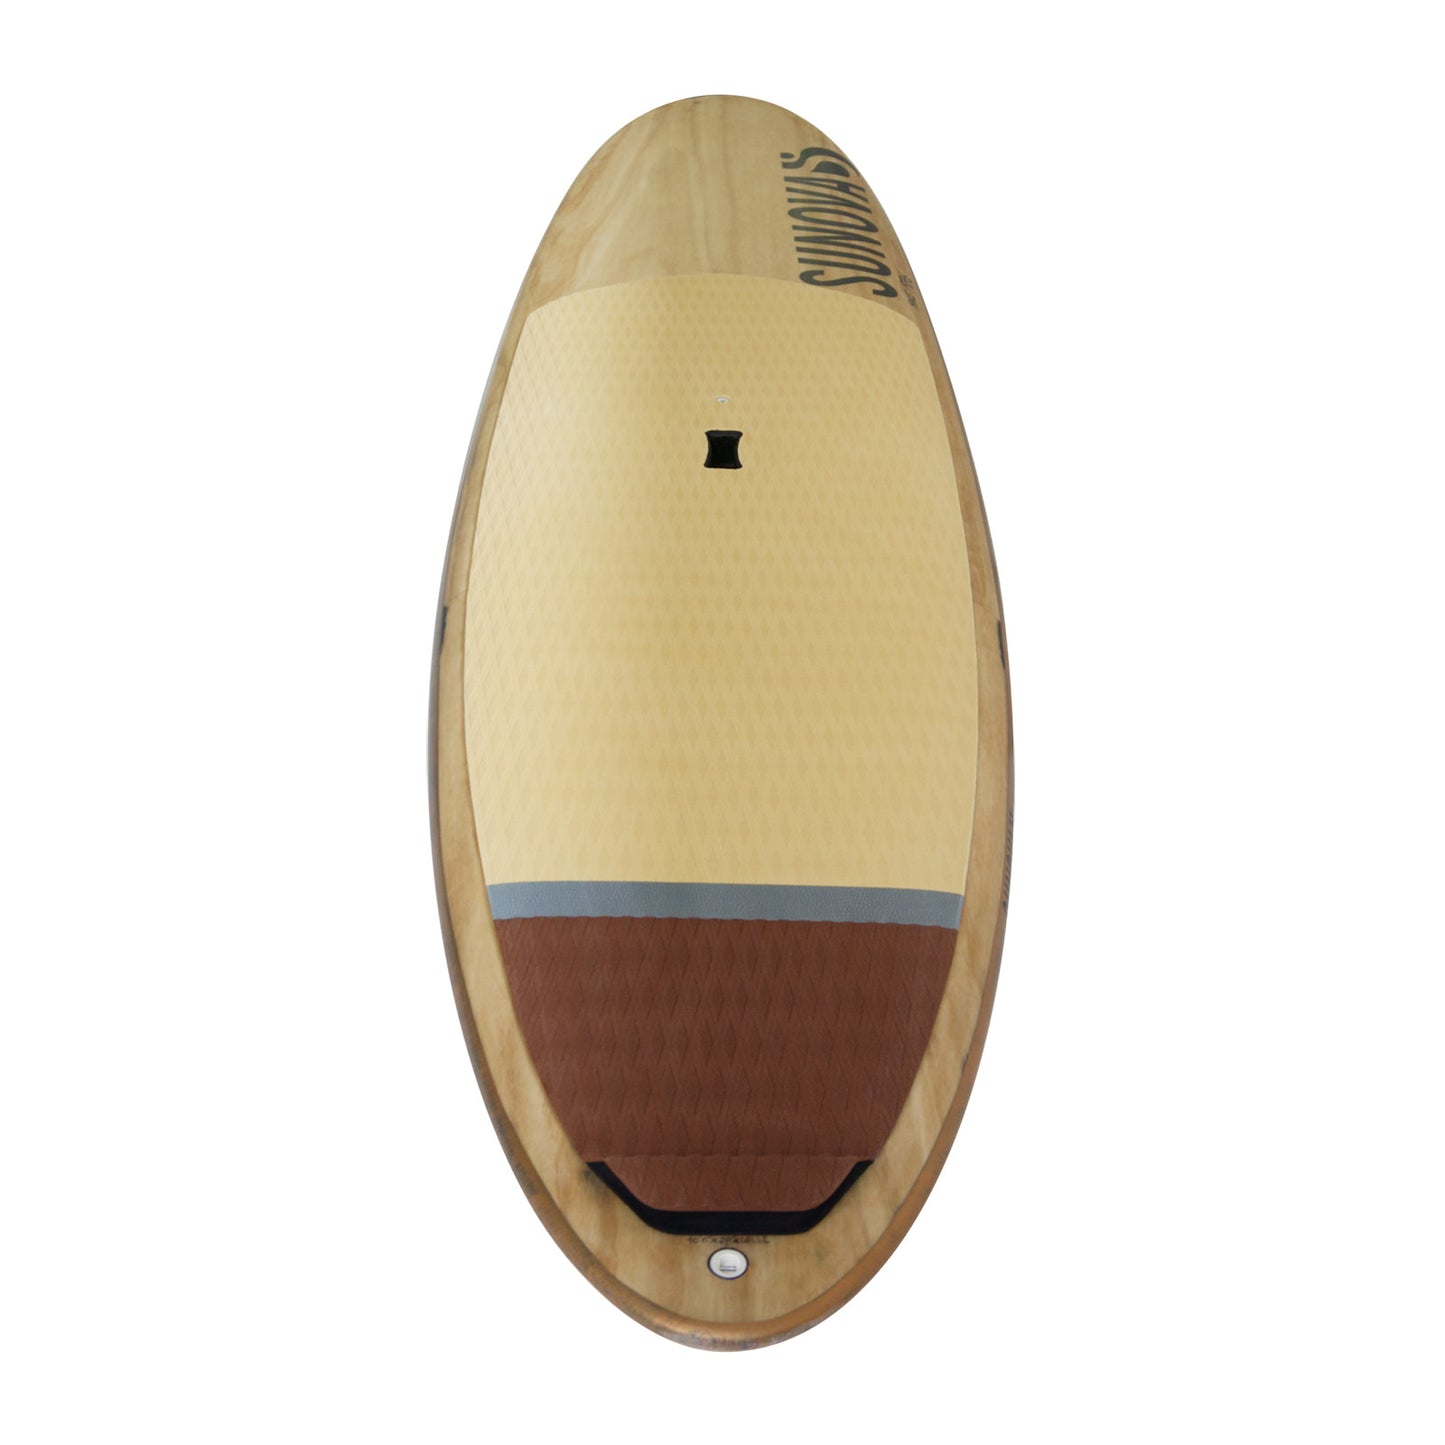 Heck Ansicht des Sunova Surf Wave SUP Board in der TR3 Bauweise.